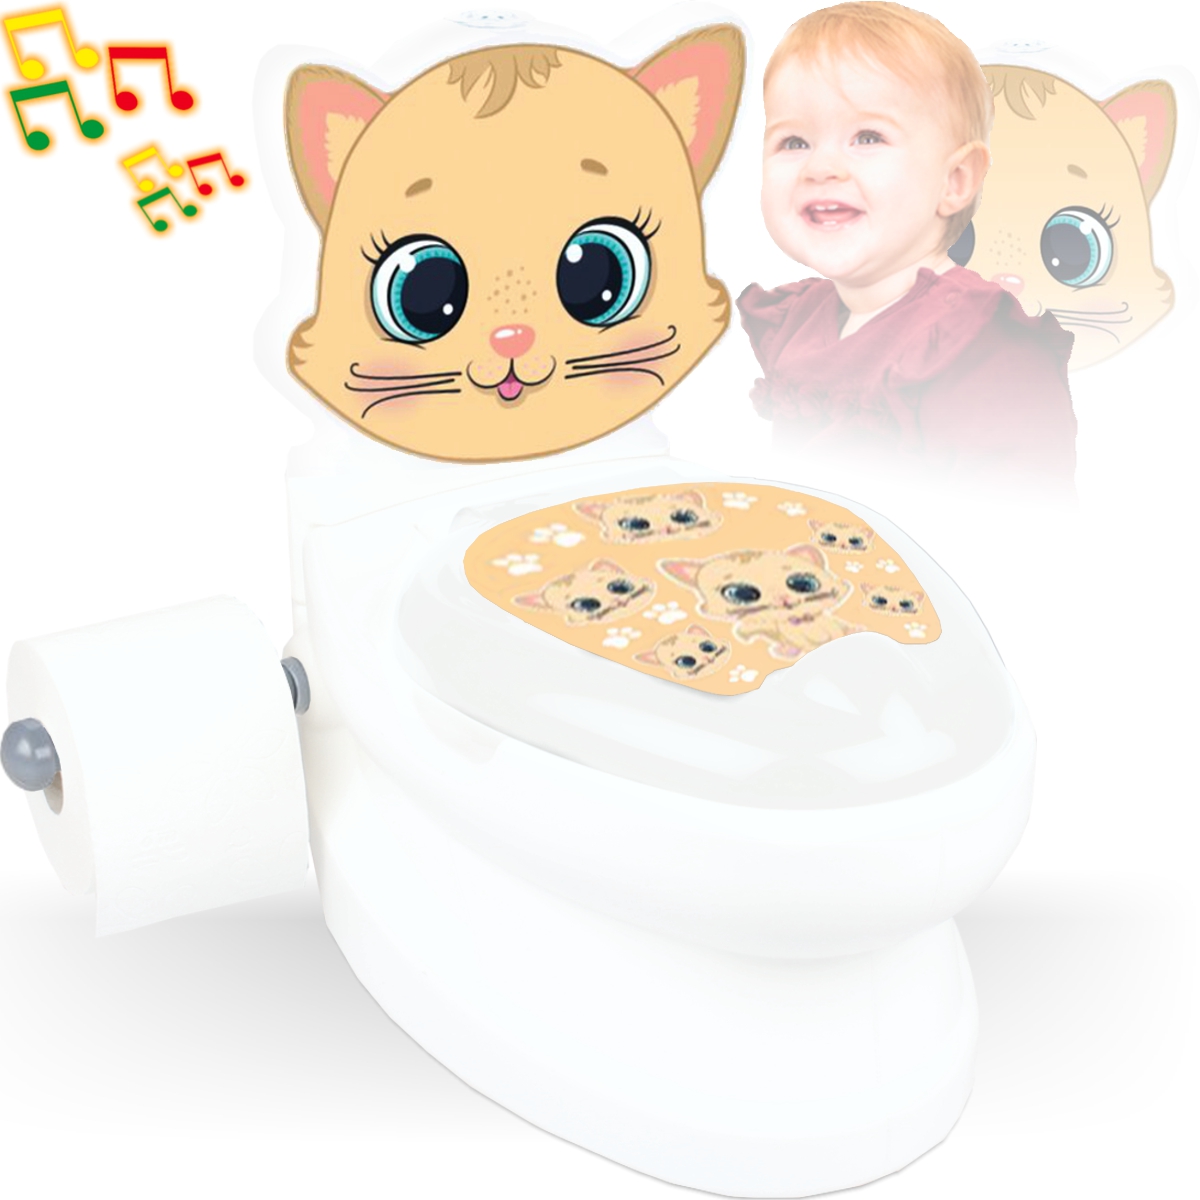 Jamara Meine Kleine Toilette Hund | online eBay kaufen (460959) - Mehrfarbig Spielzeug